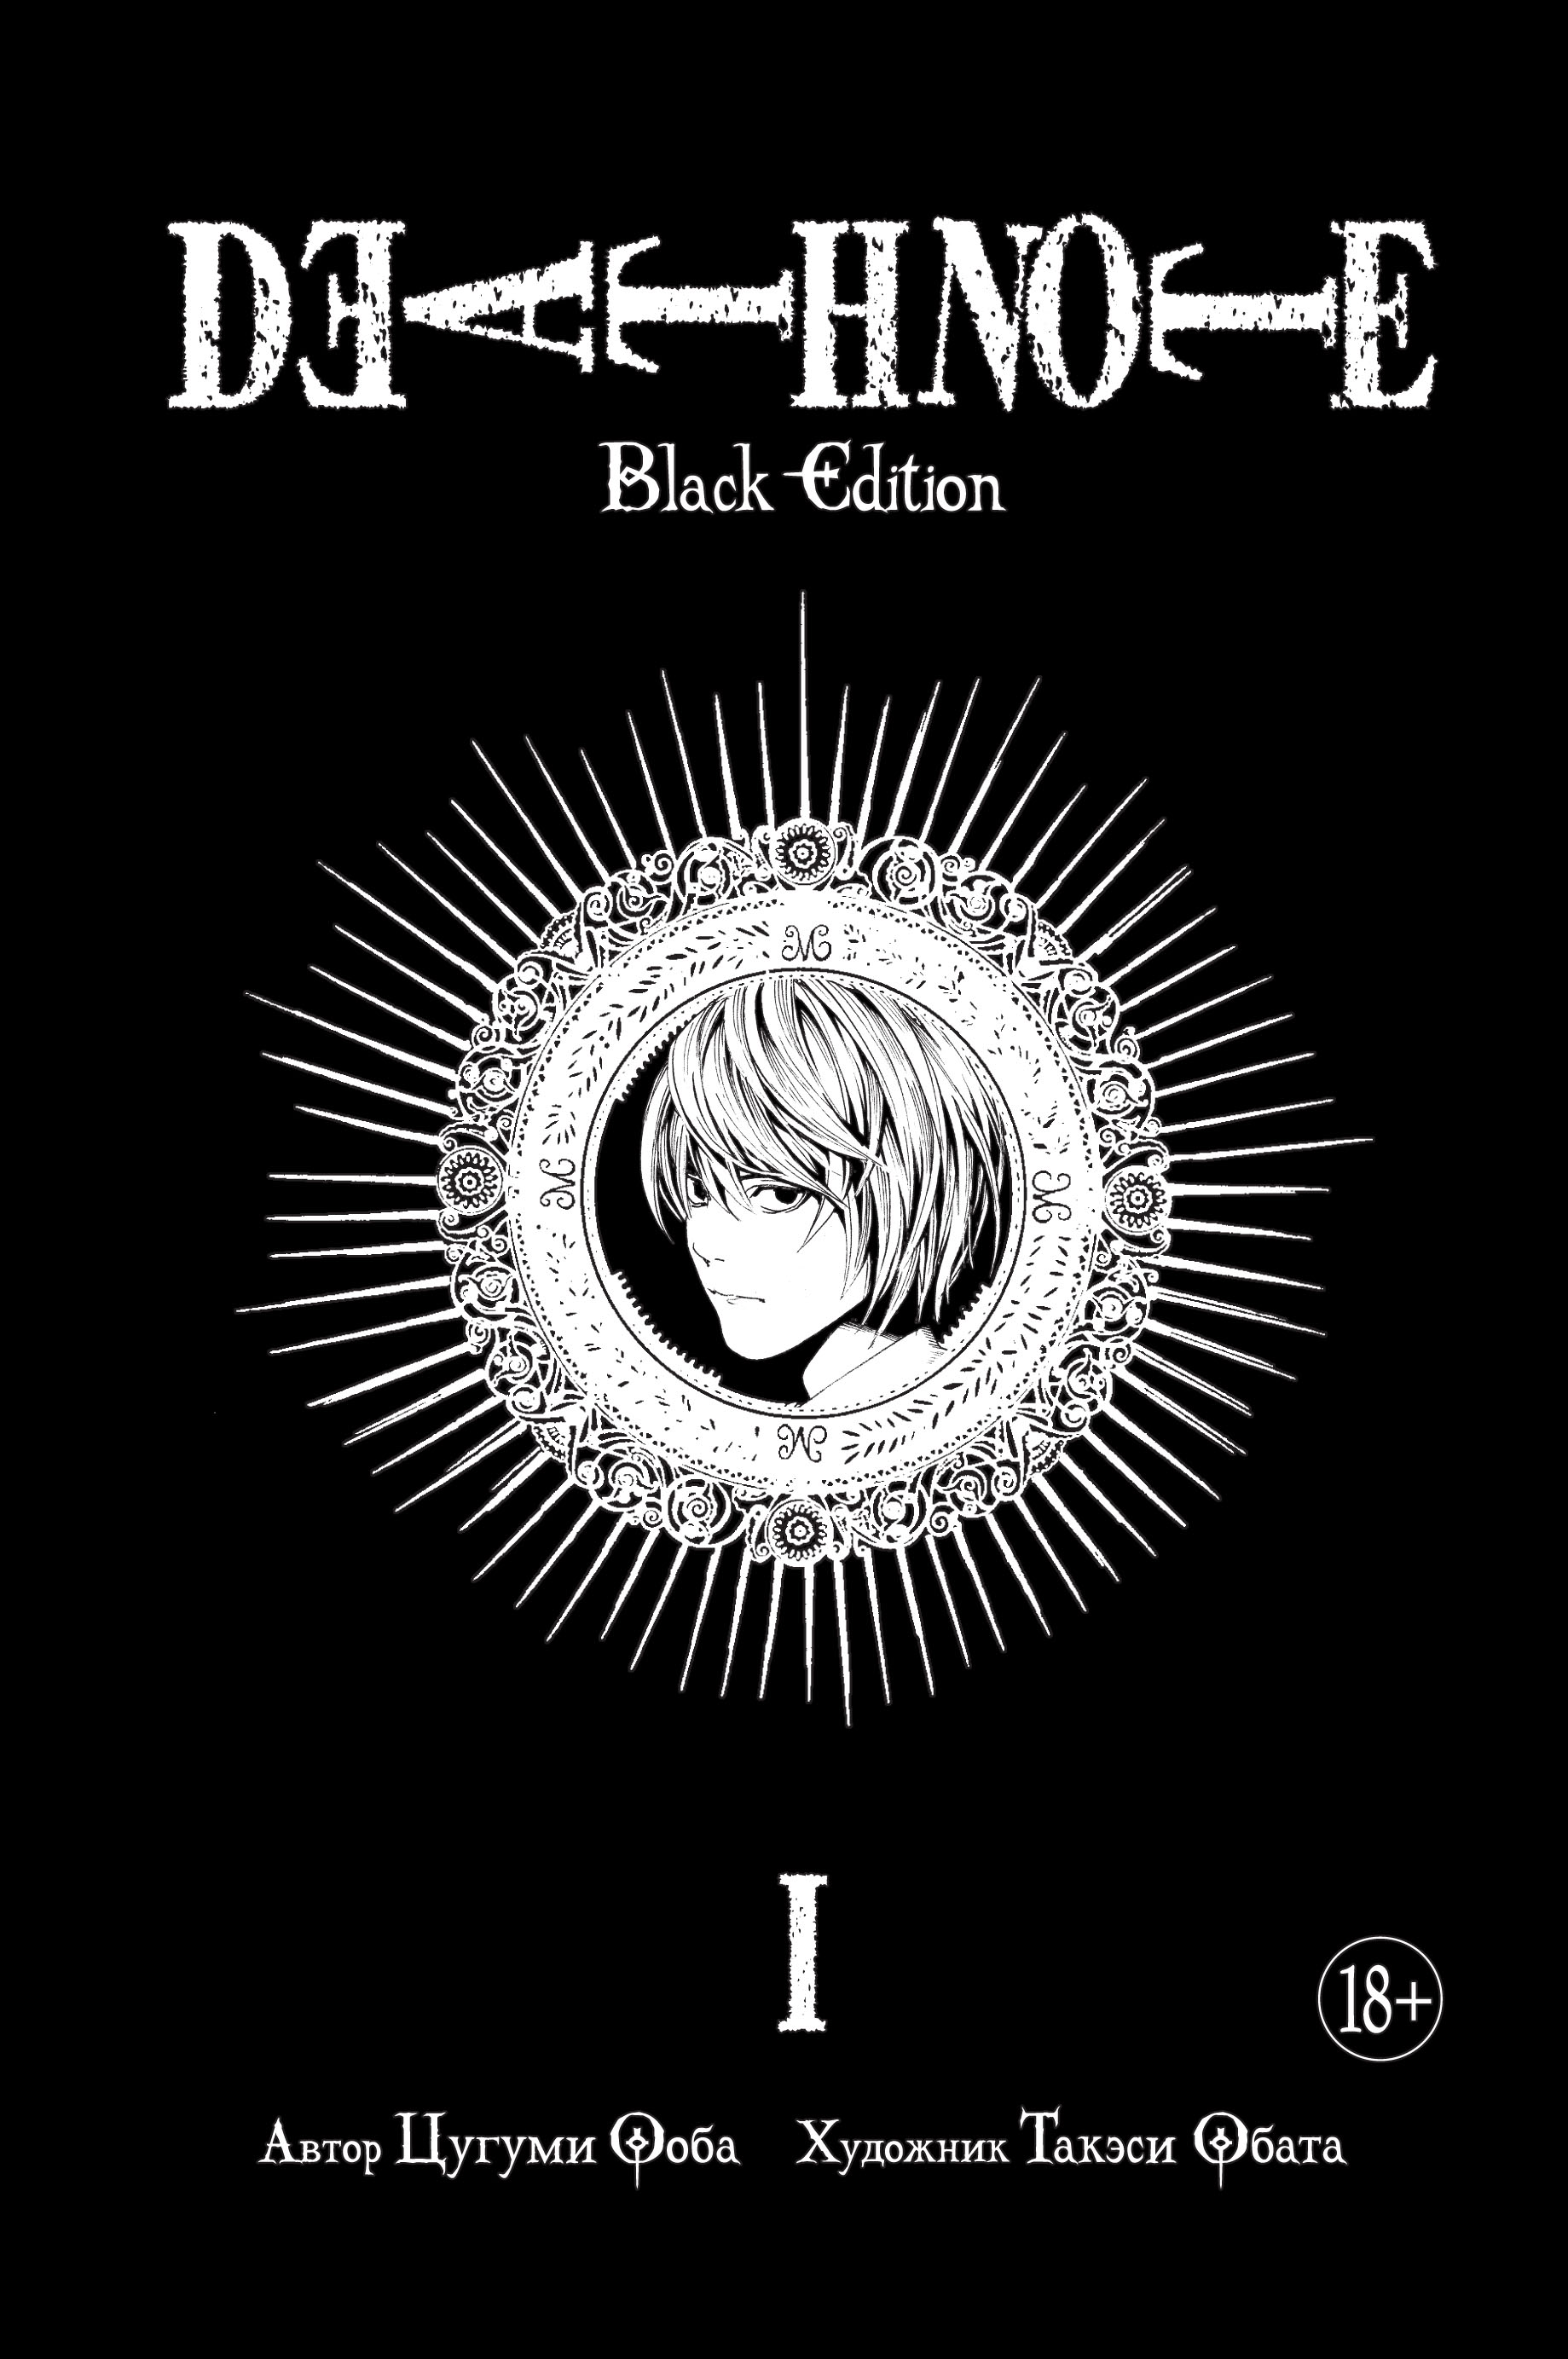 Ооба Цугуми Death Note. Black Edition. Книга 1 манга death note black edition книги 1–5 комплект книг